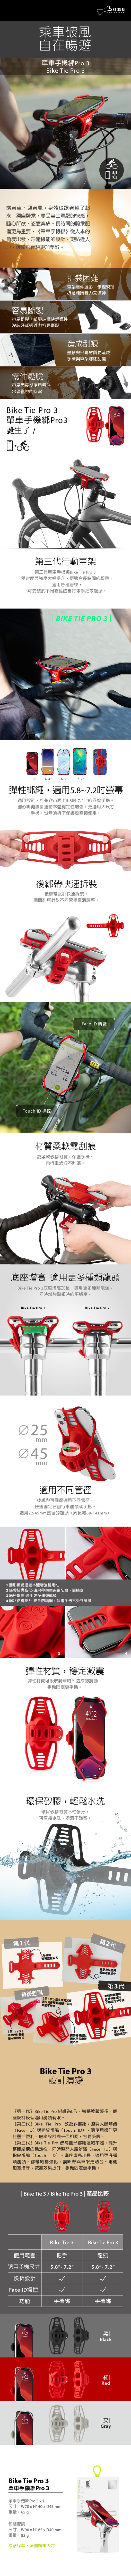 【3/29~5/31畢業季88折優惠】Bone Bike Tie Pro 3 單車手機綁 Pro 3(灰)